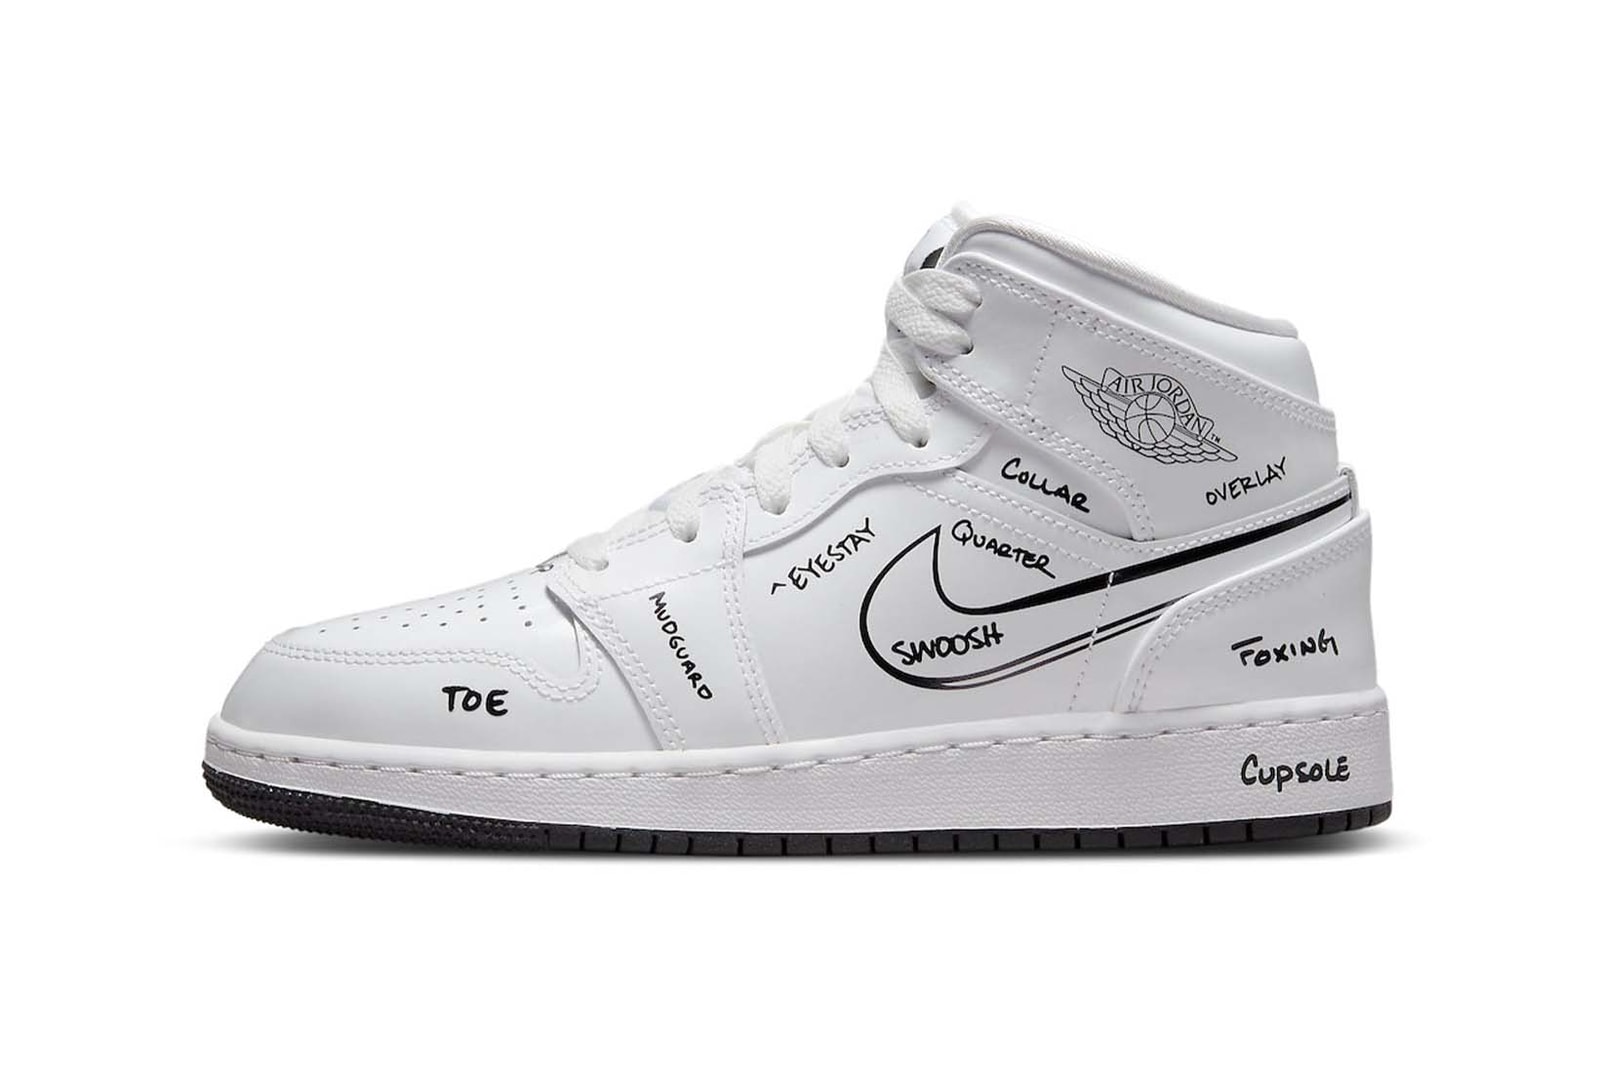 Sneaker Releases Nike Dunk Low Air Jordan 1 adidas Crazy